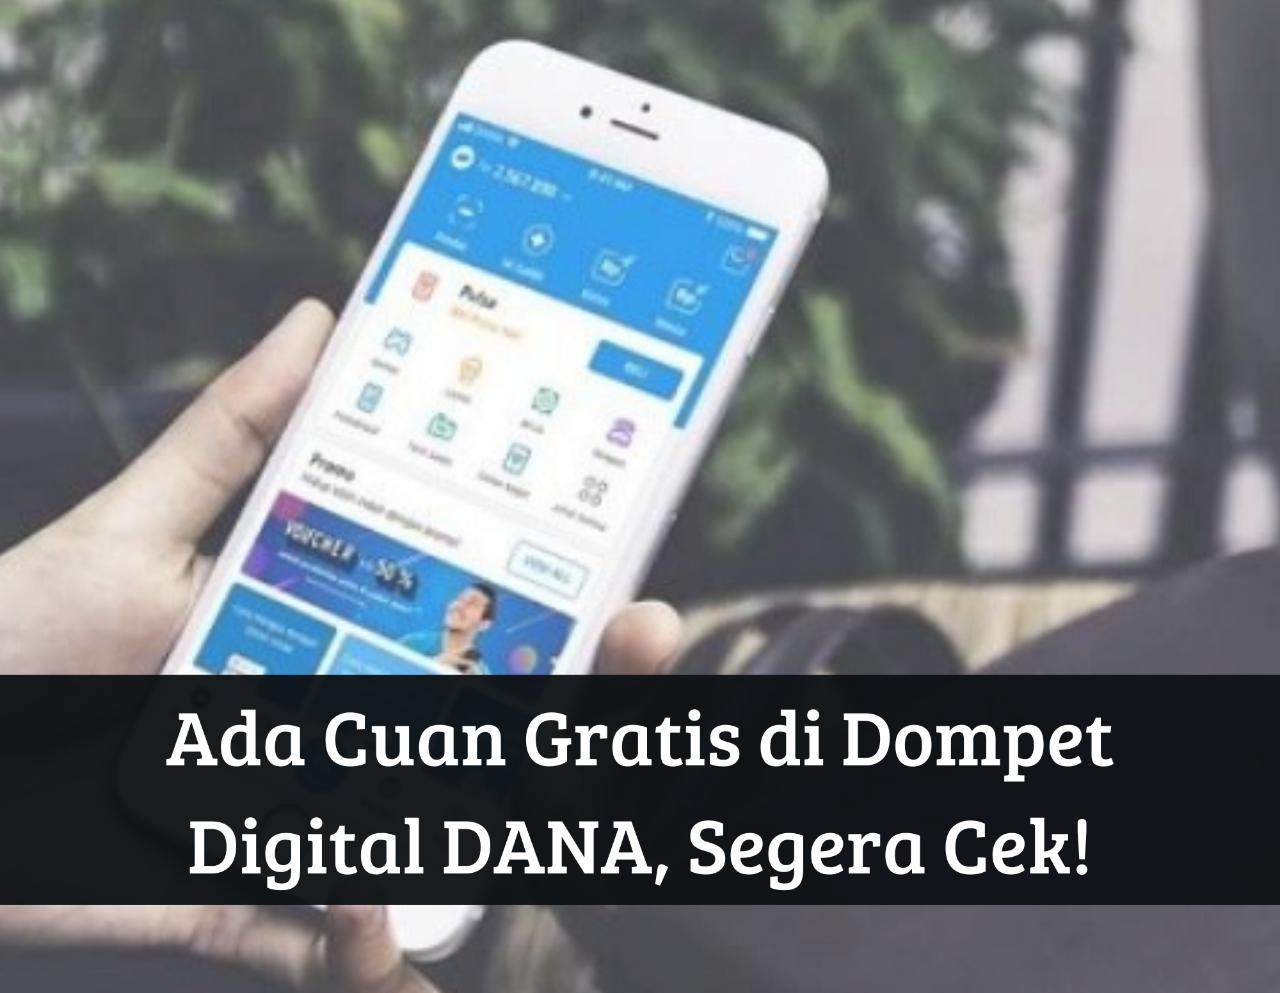 September 2023 Dapat Uang Gratis! Download Dompet Digital DANA, Saldo hingga Jutaan Rupiah Cair, Segera Ambil